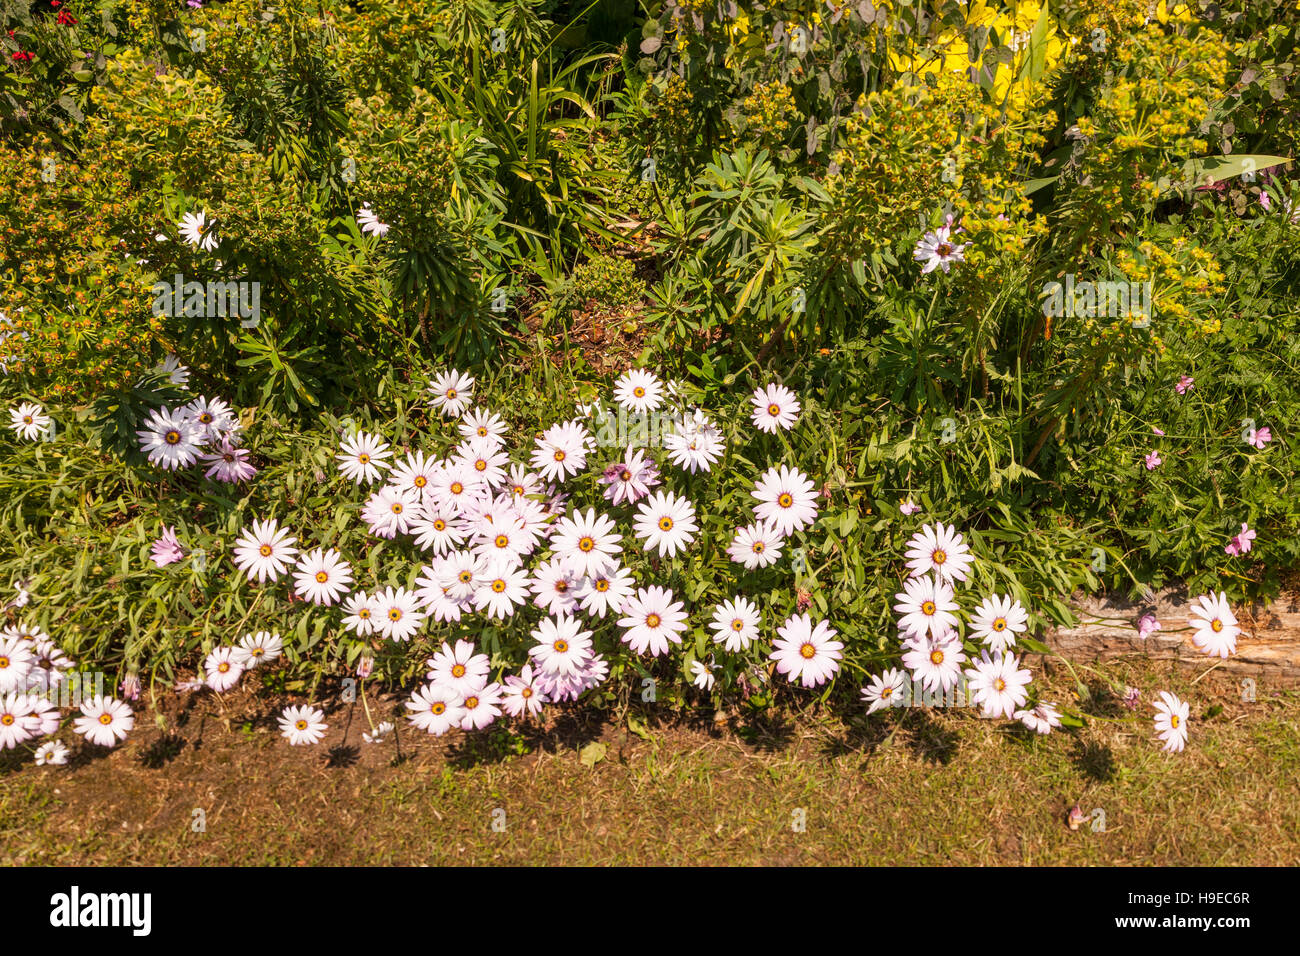 Kap-Gänseblümchen Gänseblümchen wachsen in einem britischen Garten Stockfoto